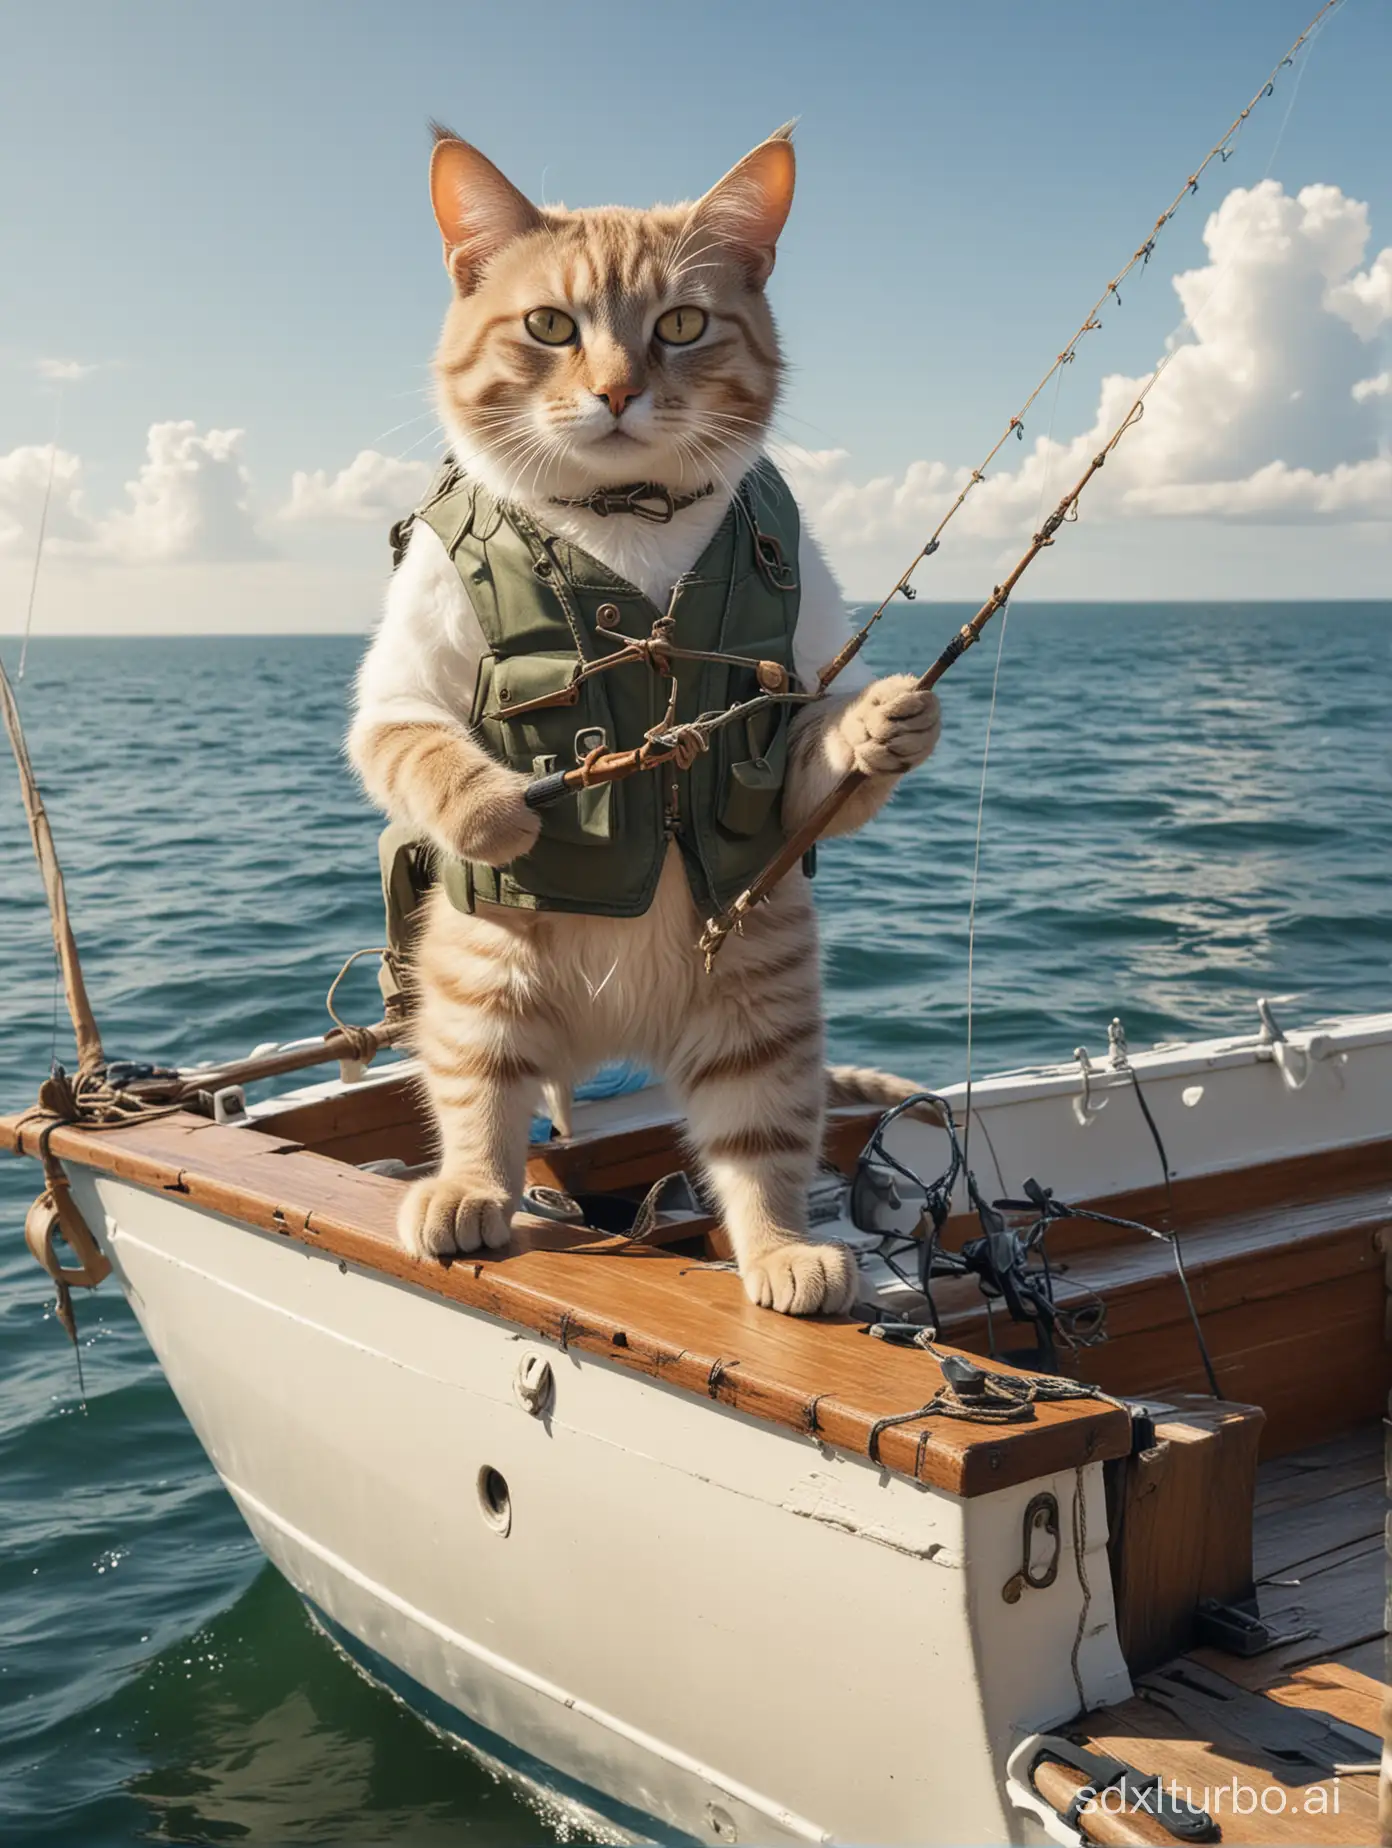 Um gato antropomórfico em um barco no mar indo pescar em um dia endolarado